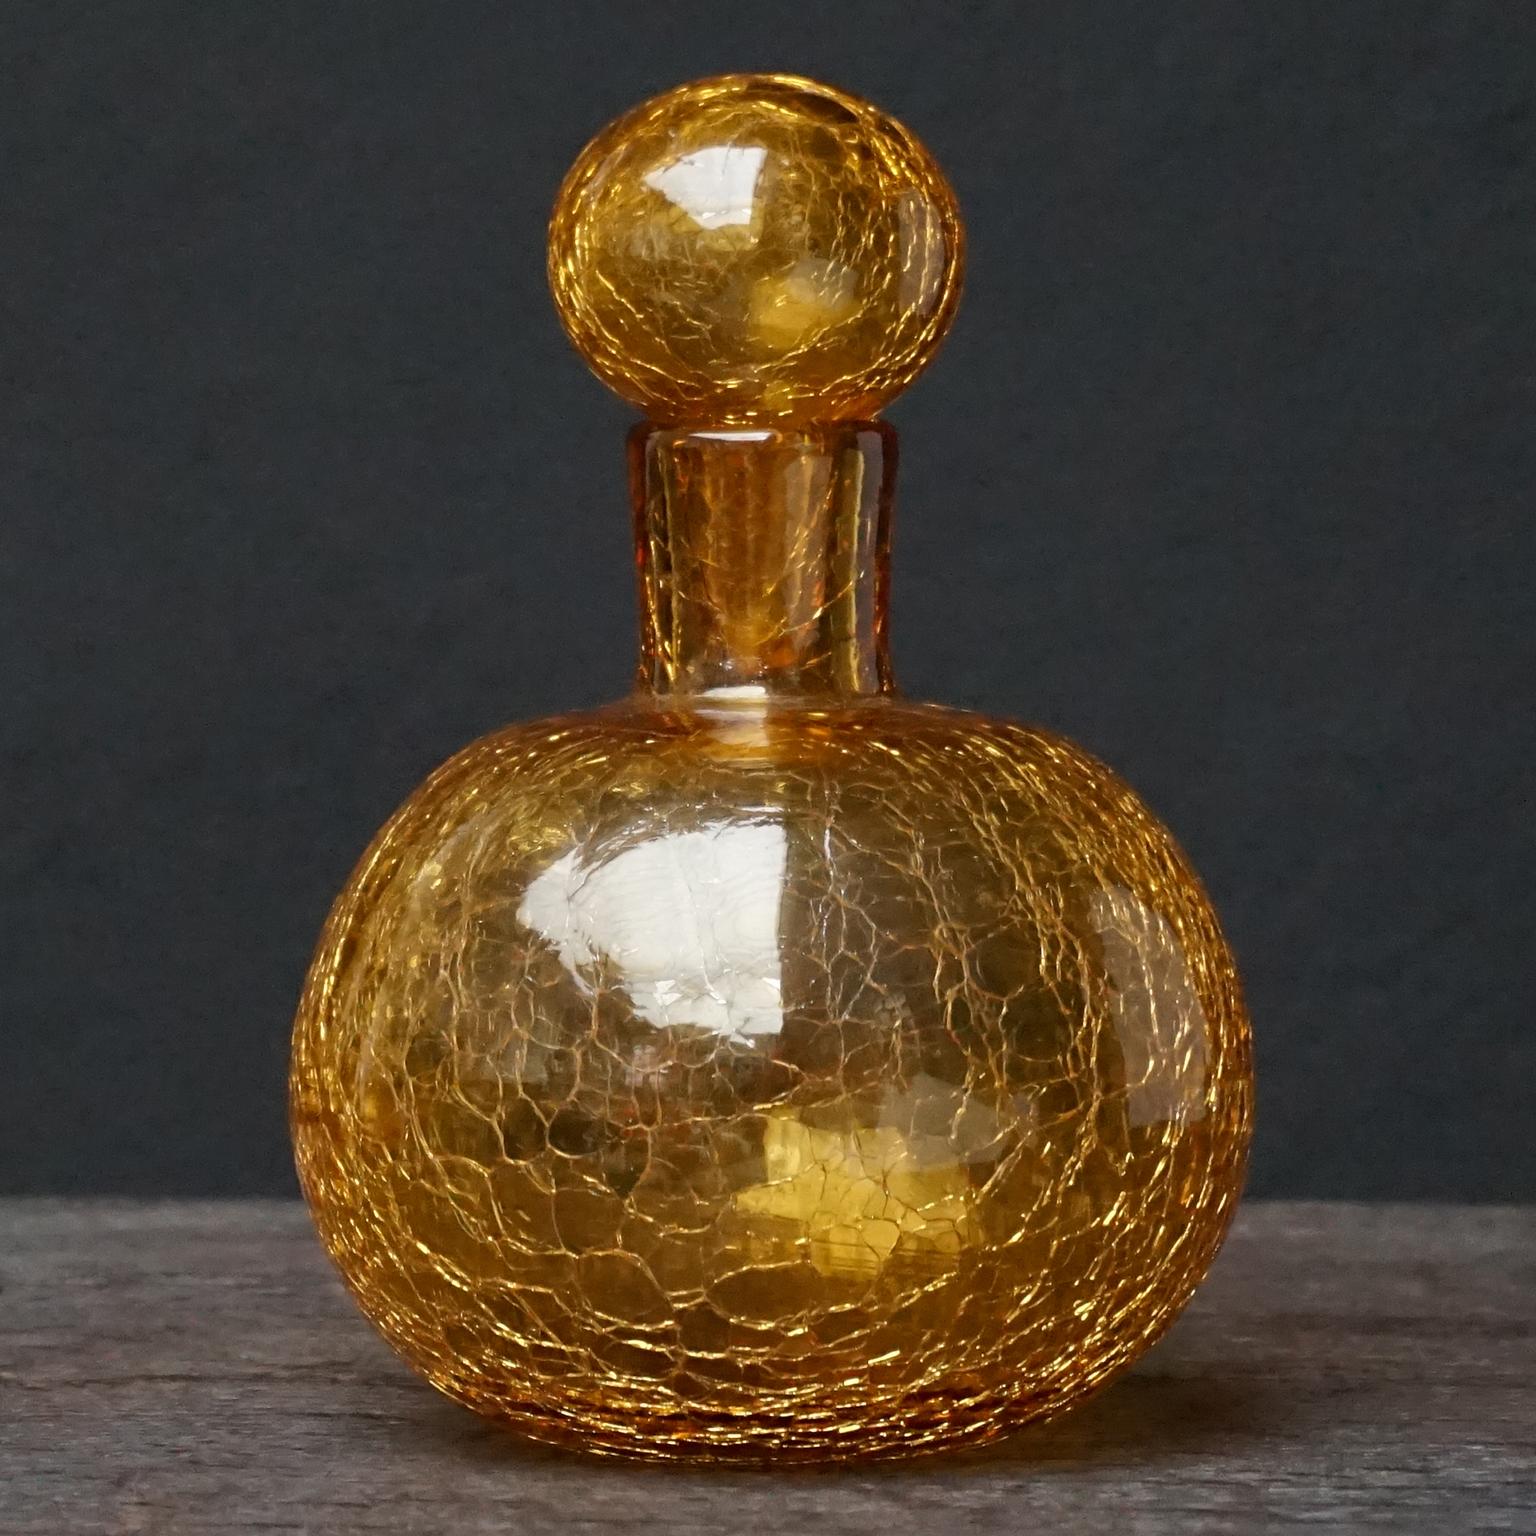 Hübsche kleine bernsteingelbe Blenko-Karaffe aus den 1950er Jahren aus mundgeblasenem Craquelé-Kunstglas mit Stopfen und sichtbarem Pontil.
Blenko Glass Company ist ein amerikanisches Familienunternehmen, das seit 1893 besteht. 
Seit 1921 haben